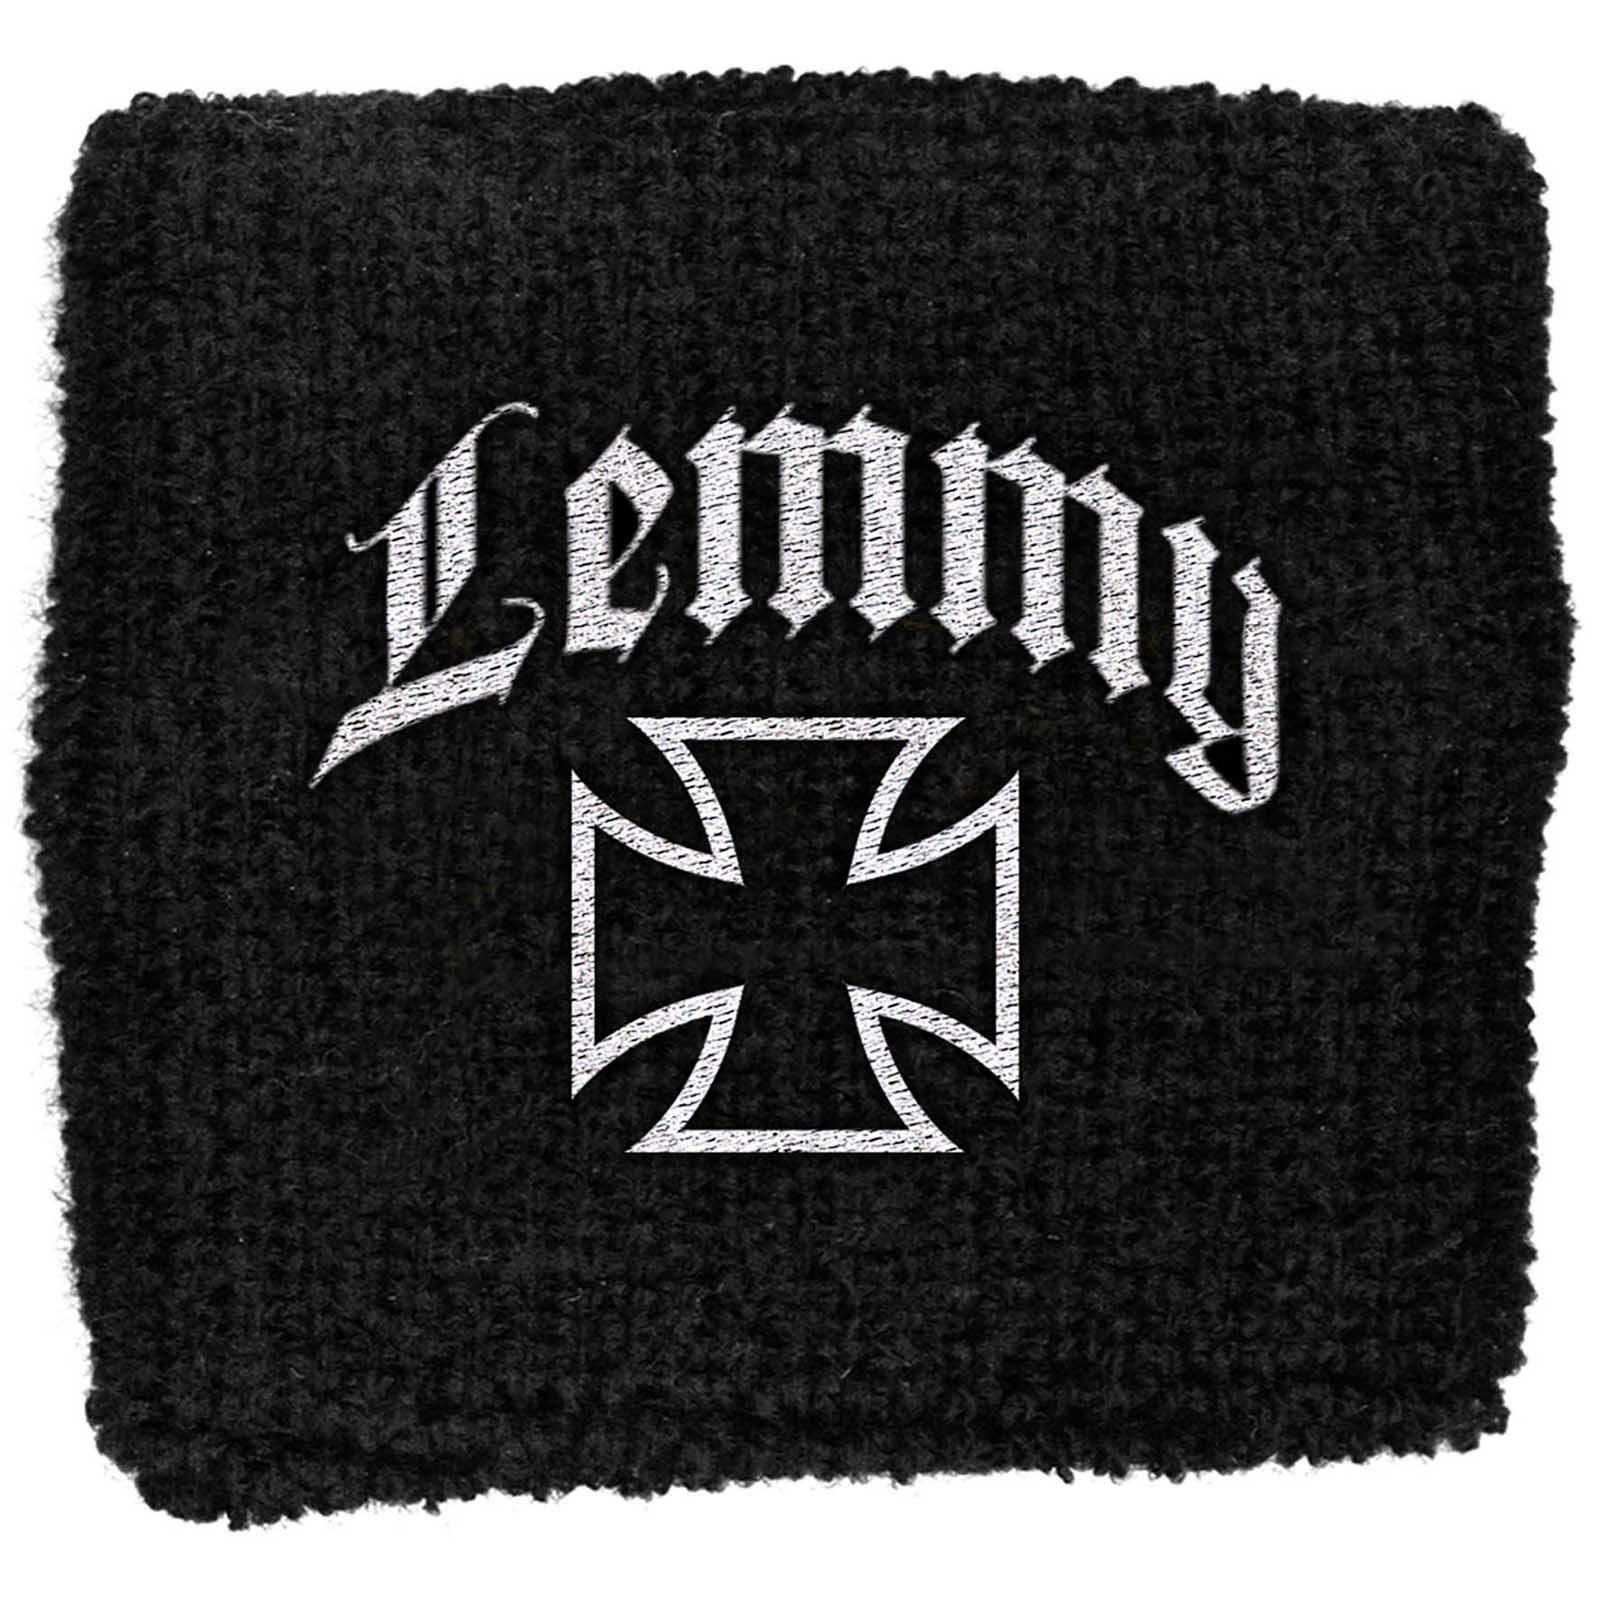 (レミー) Lemmy オフィシャル商品 Iron Cross リストバンド スエットバンド 【海外通販】